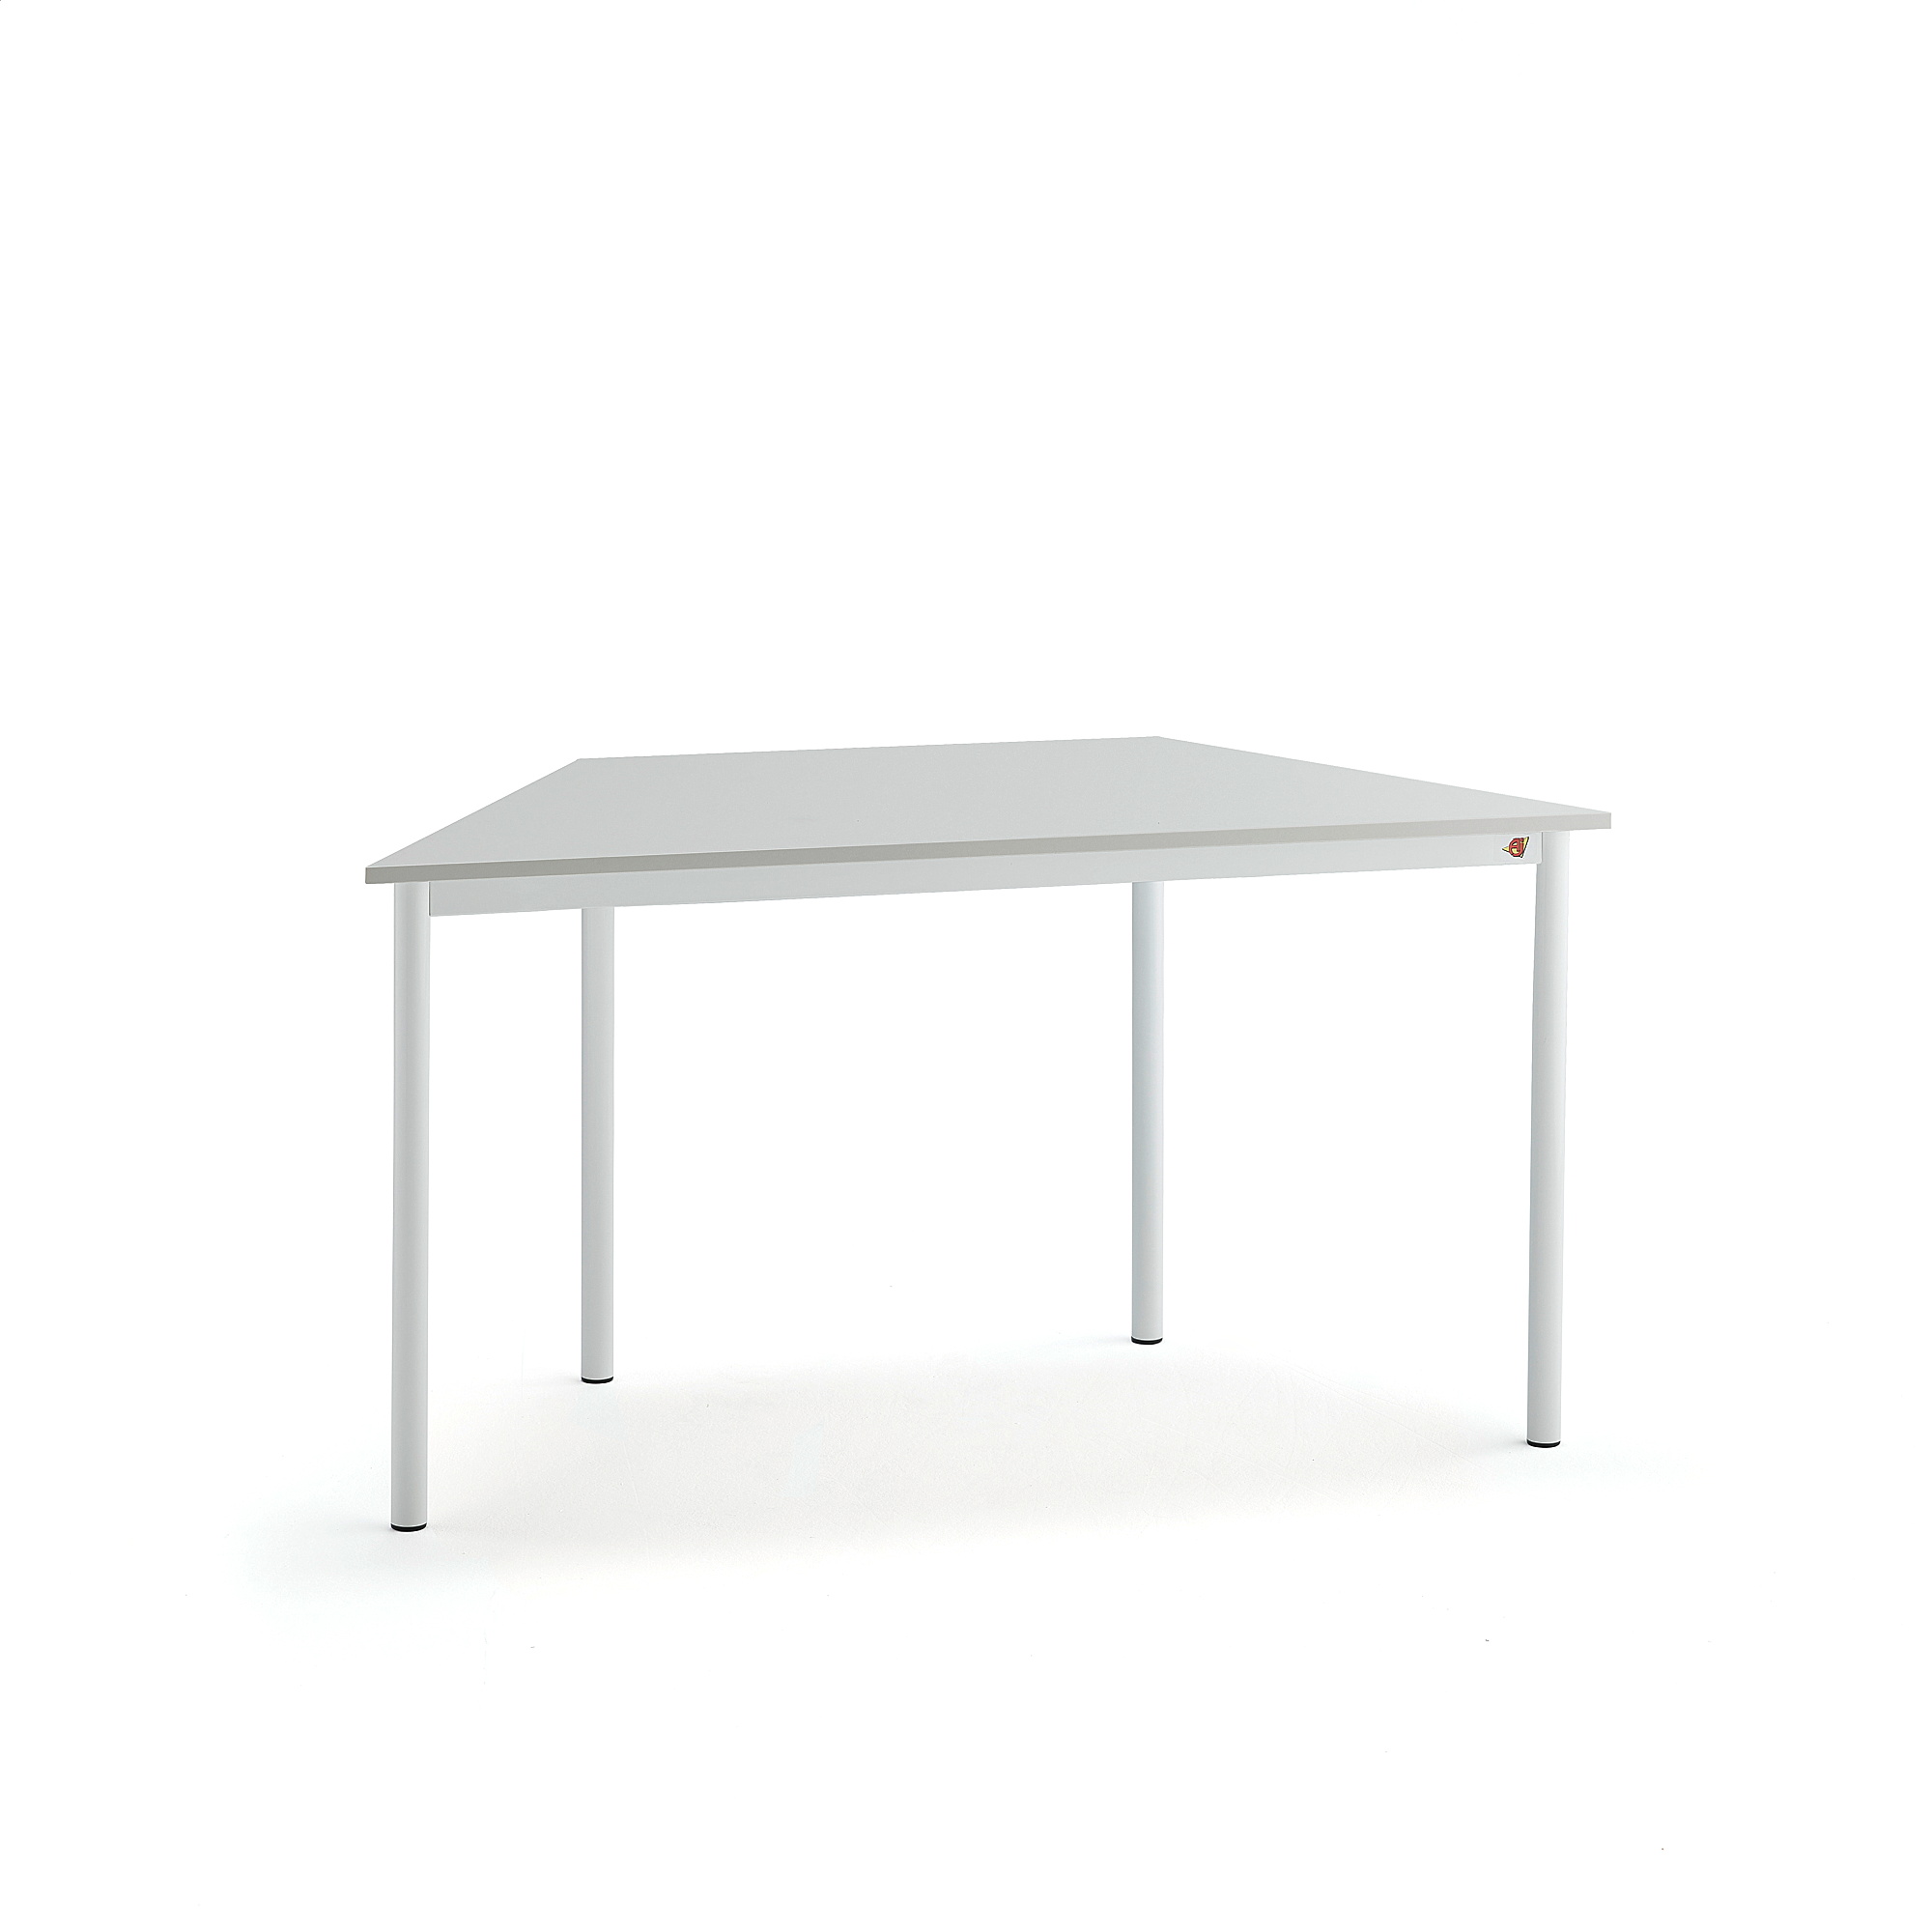 Stůl SONITUS TRAPETS, 1200x600x720 mm, bílé nohy, HPL deska tlumící hluk, šedá